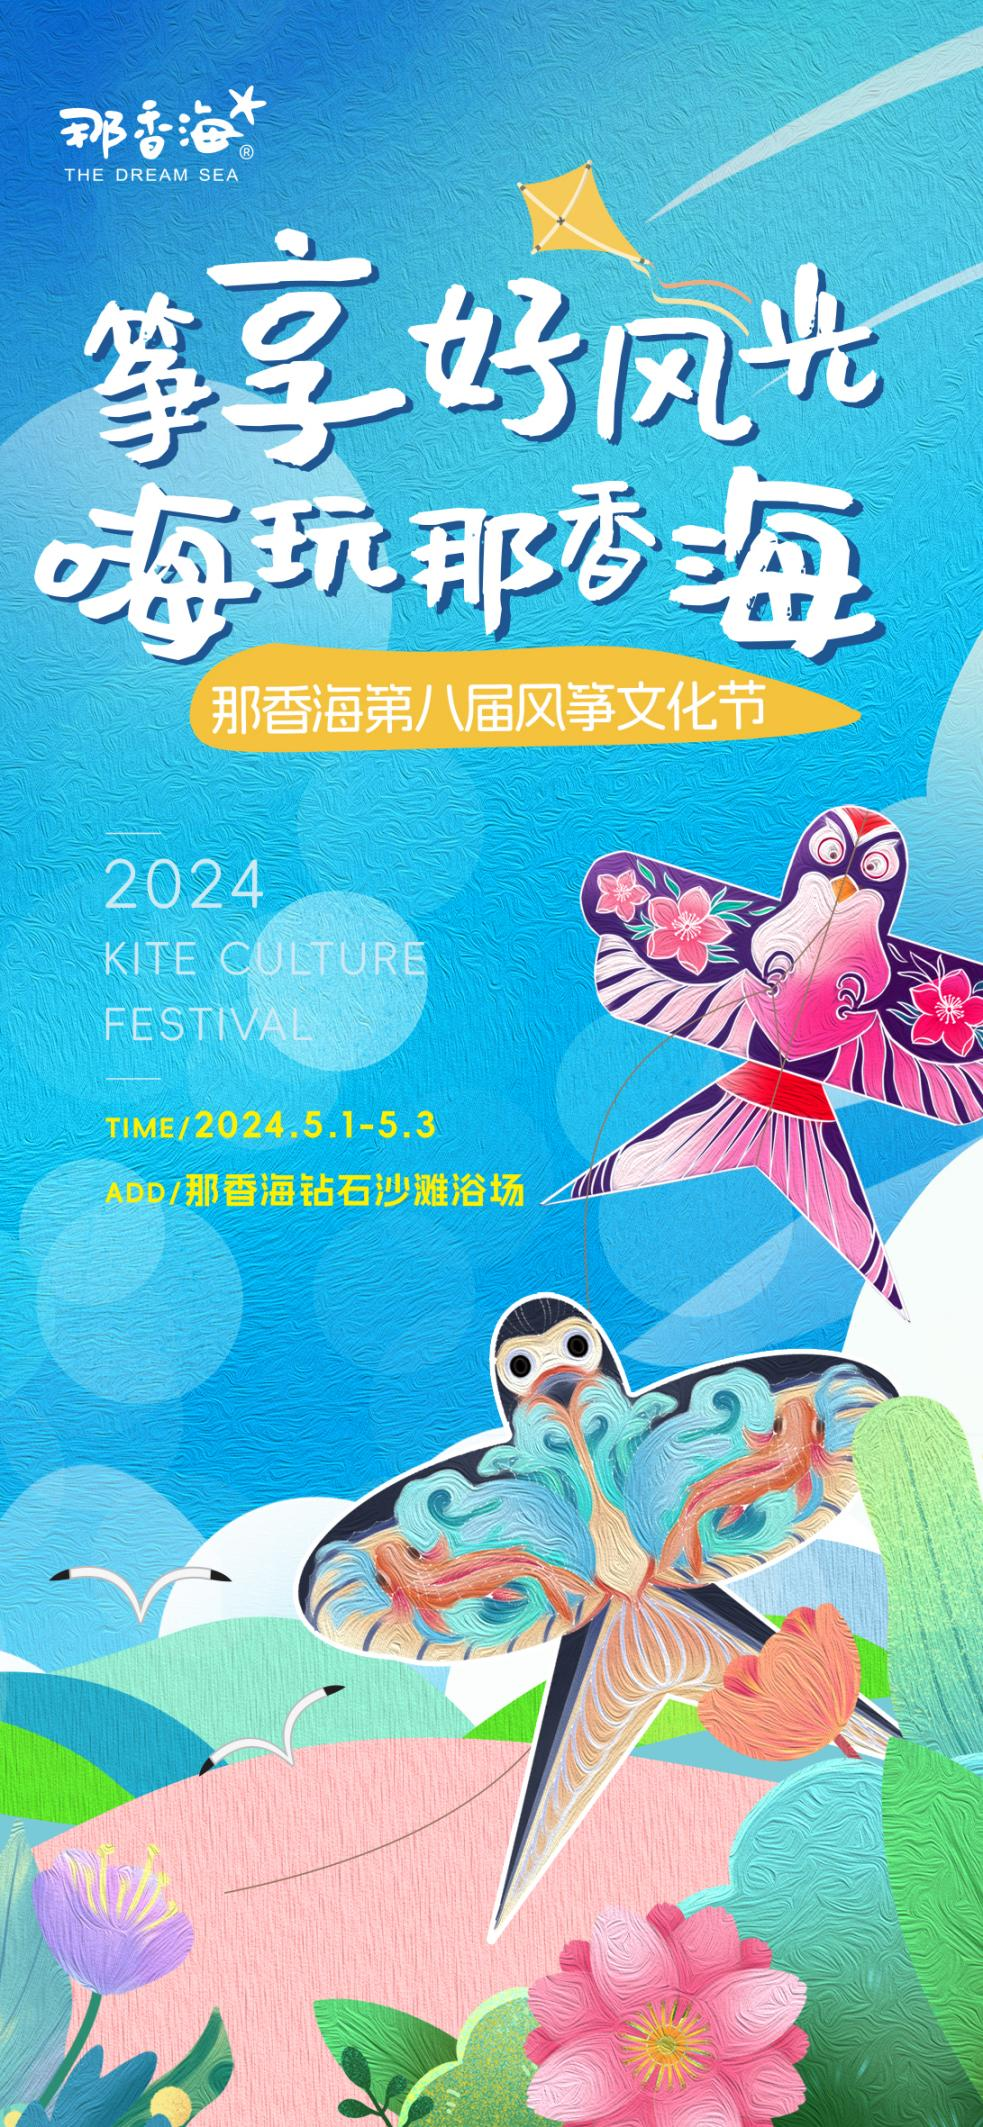 风筝表演+沙滩LIVEHOUSE+抽奖+美食...那香海第八届风筝文化节将于五一开幕！